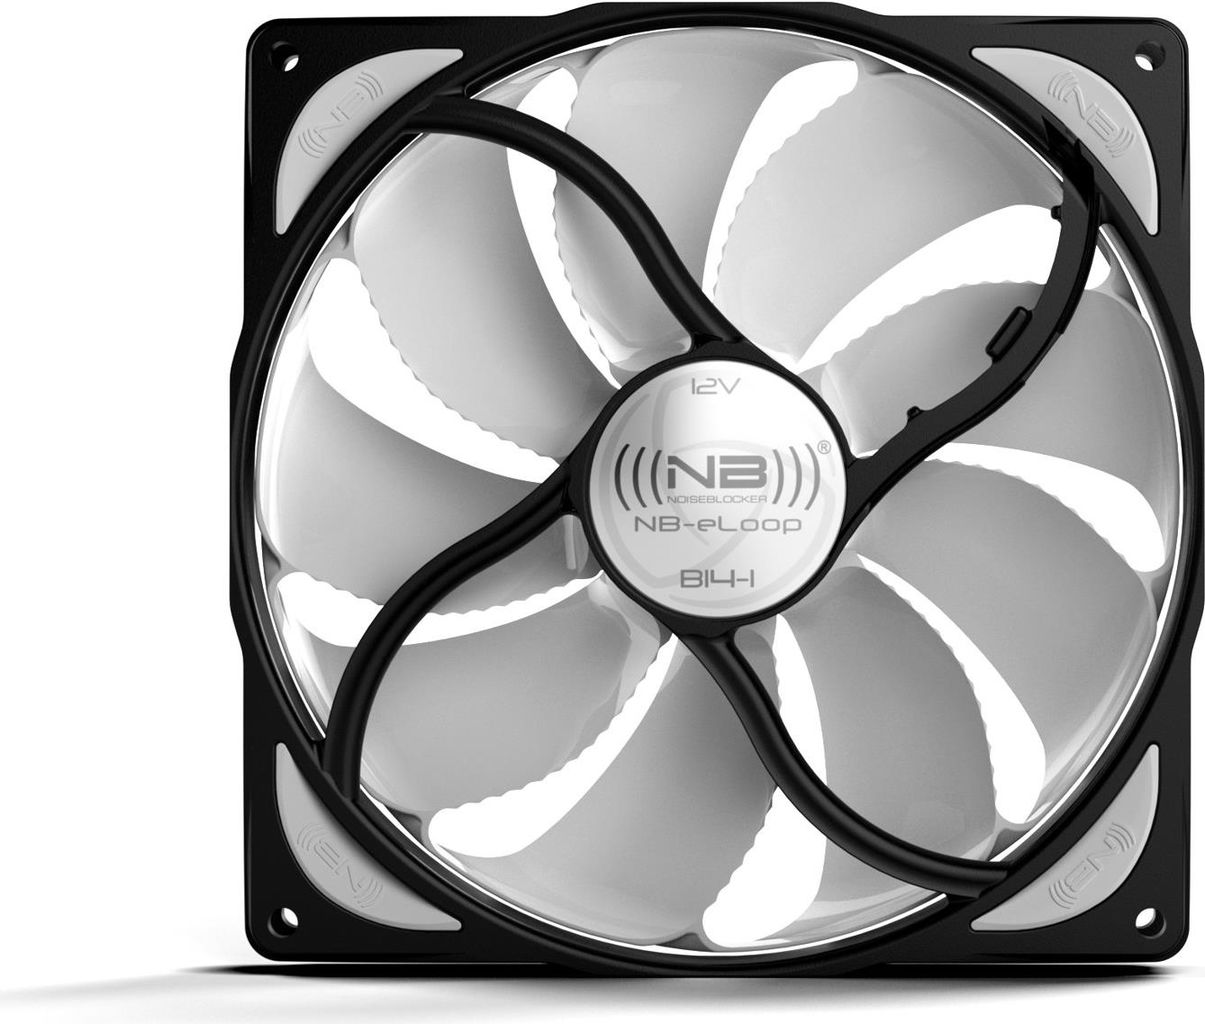 BLACKNOISE Noiseblocker NB-eLoop Fan B14-3 - 140mm